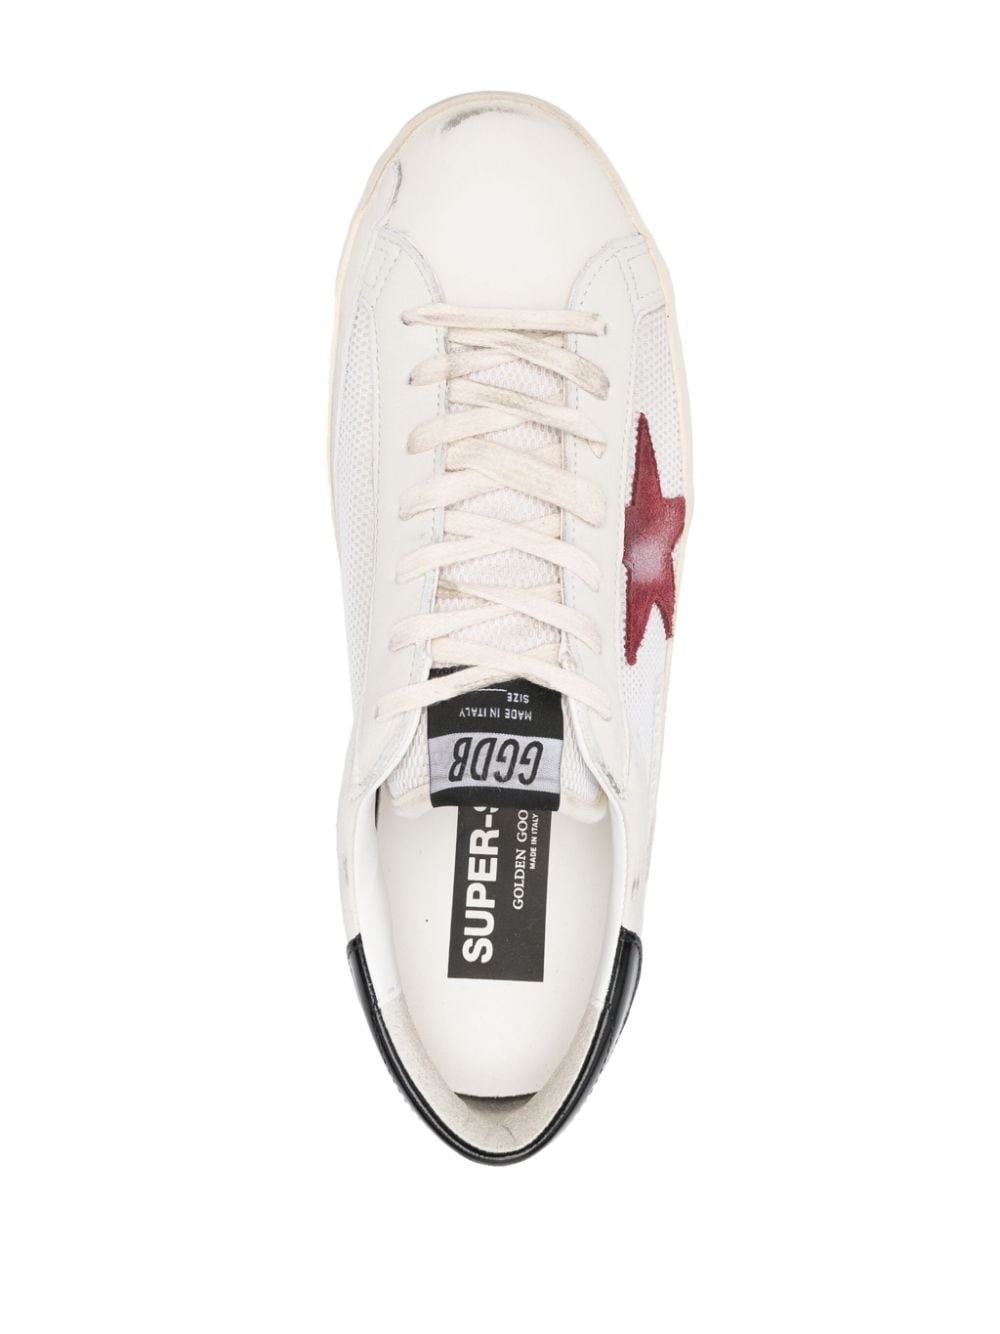 Golden Goose Deluxe Brand Sneakers Bianco Uomo Superstar in pelle - 3